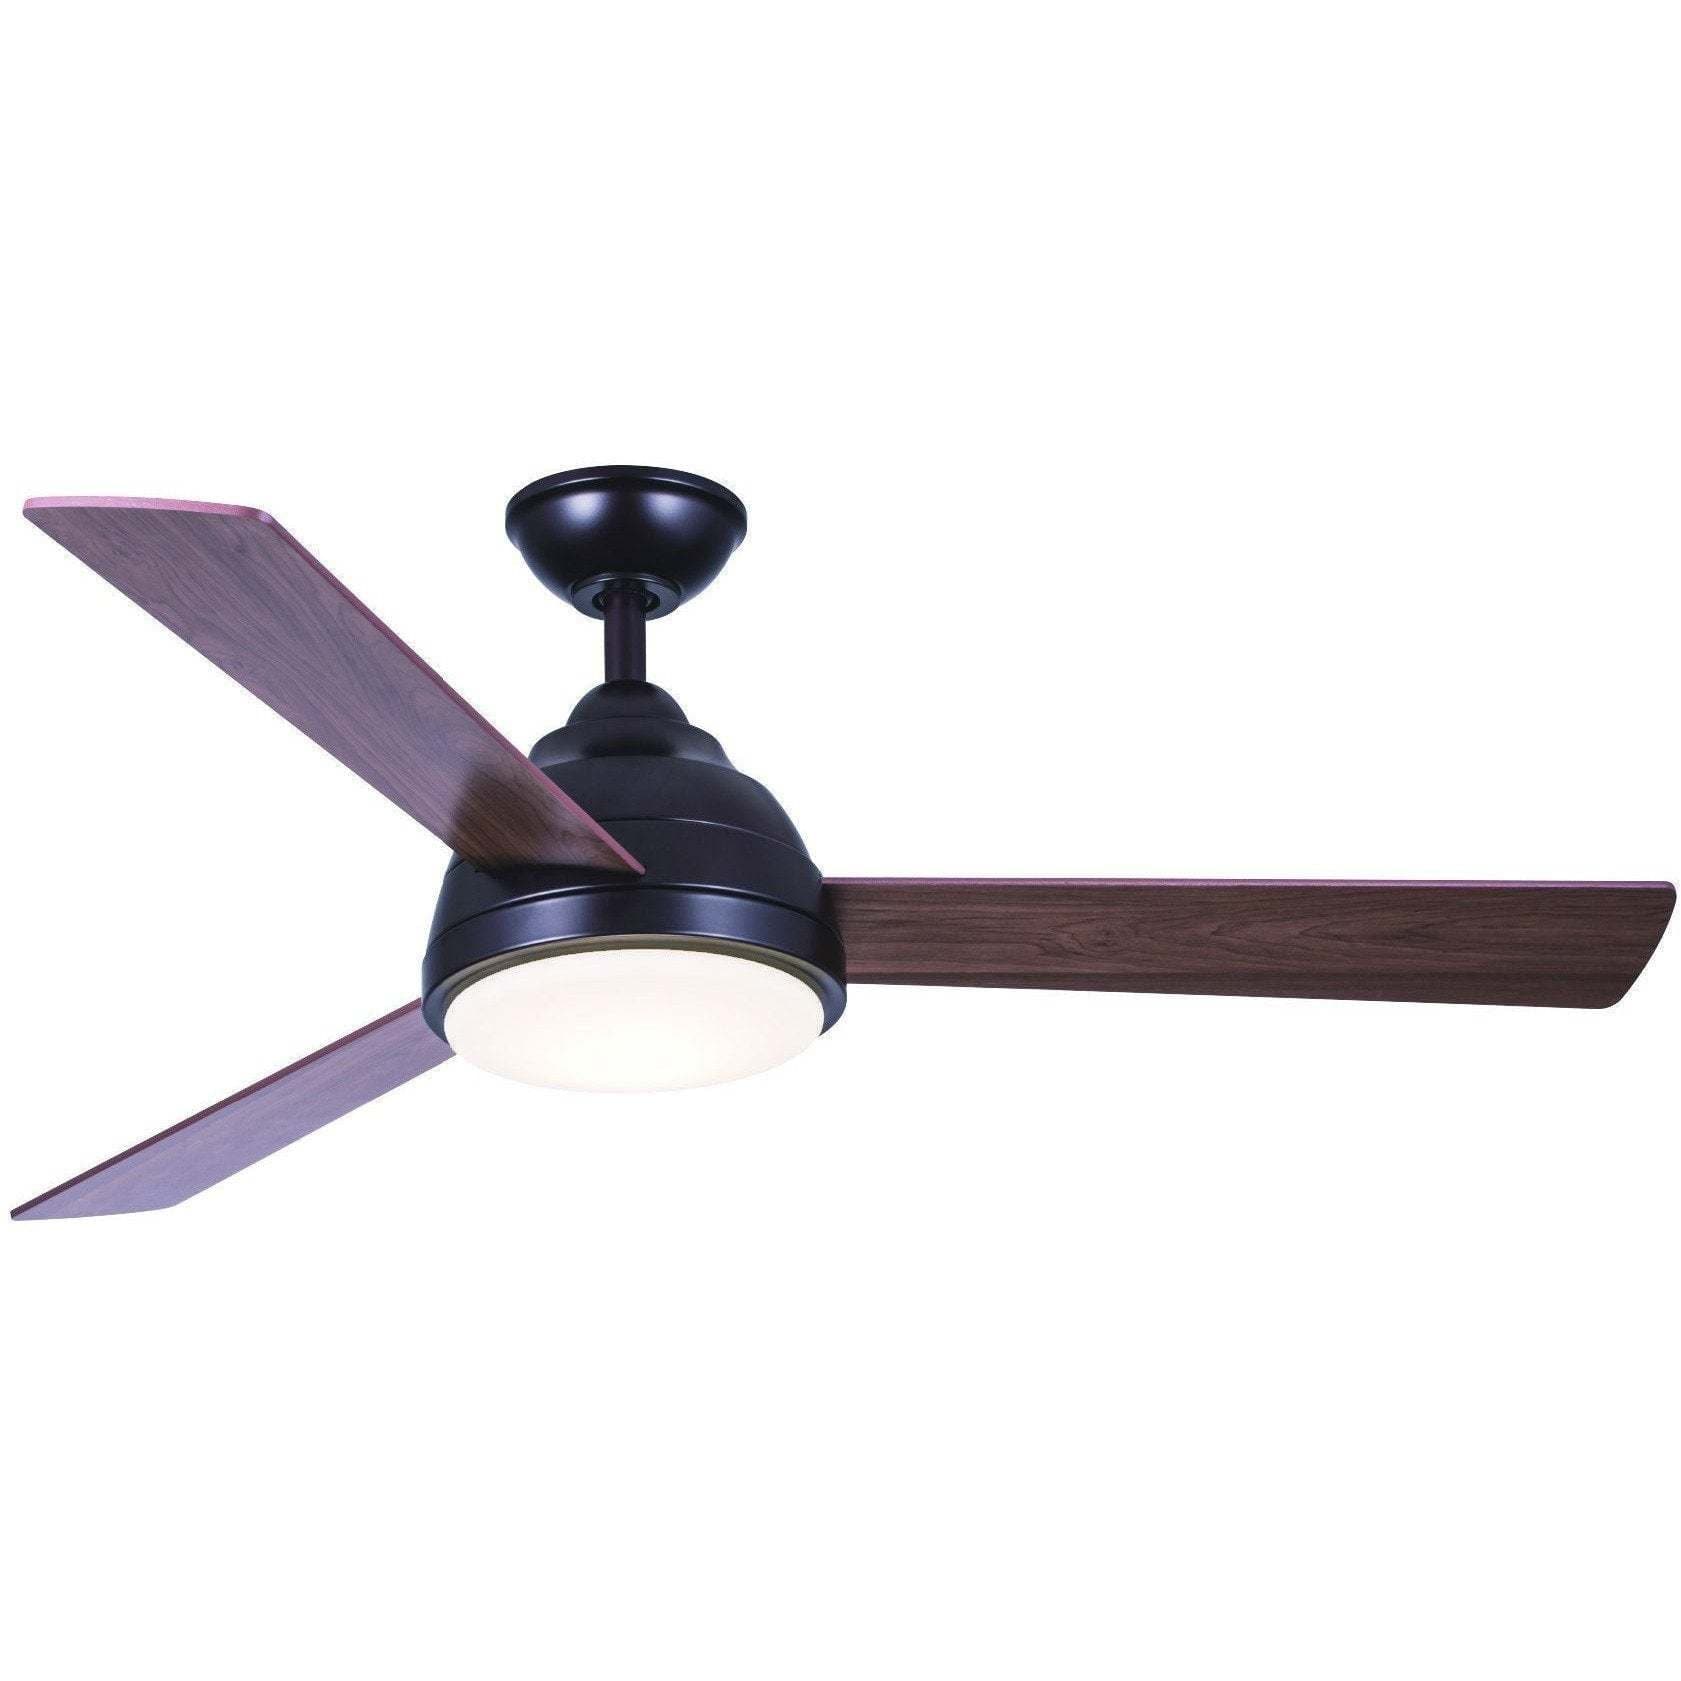 Wind River Neopolis Ceiling Fan - 3 Blade - Image 1